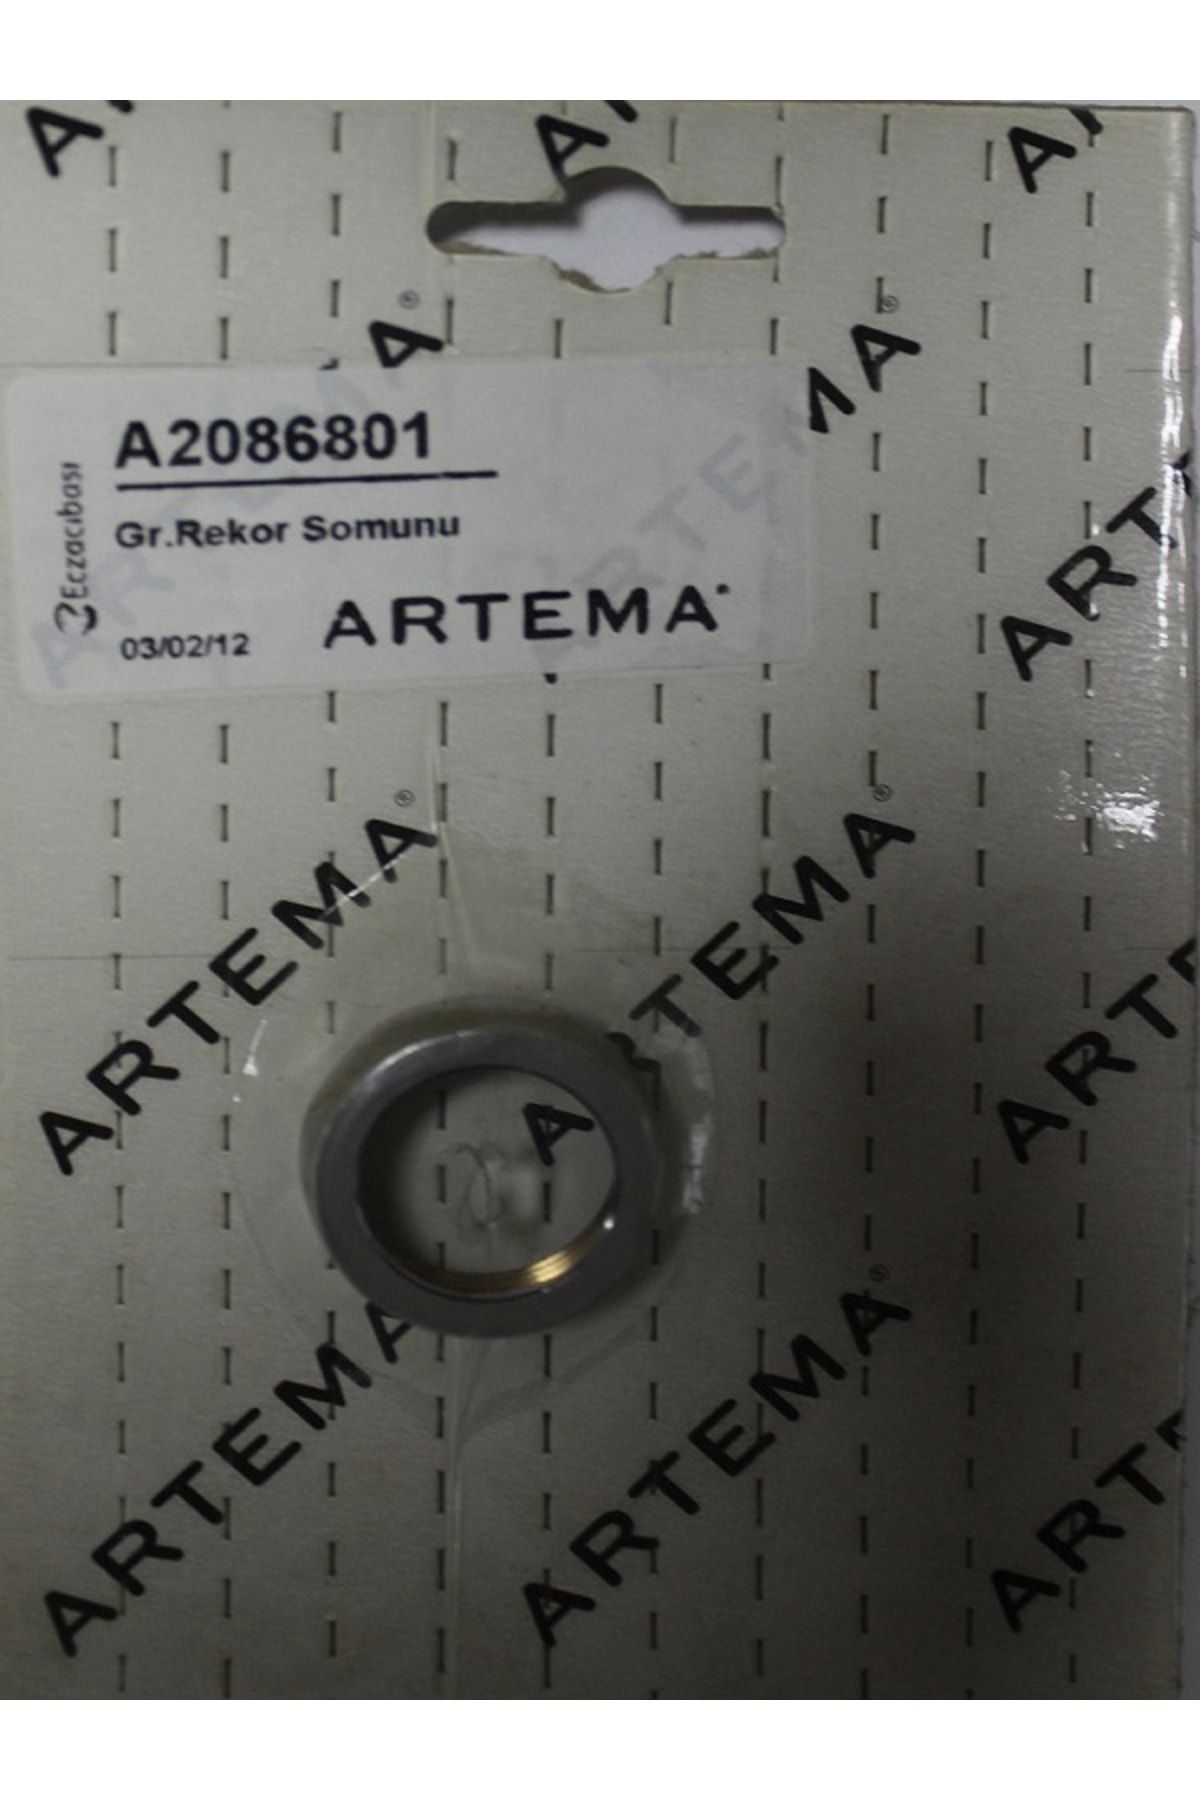 Artema Gr.rekor Somunu - A2086801